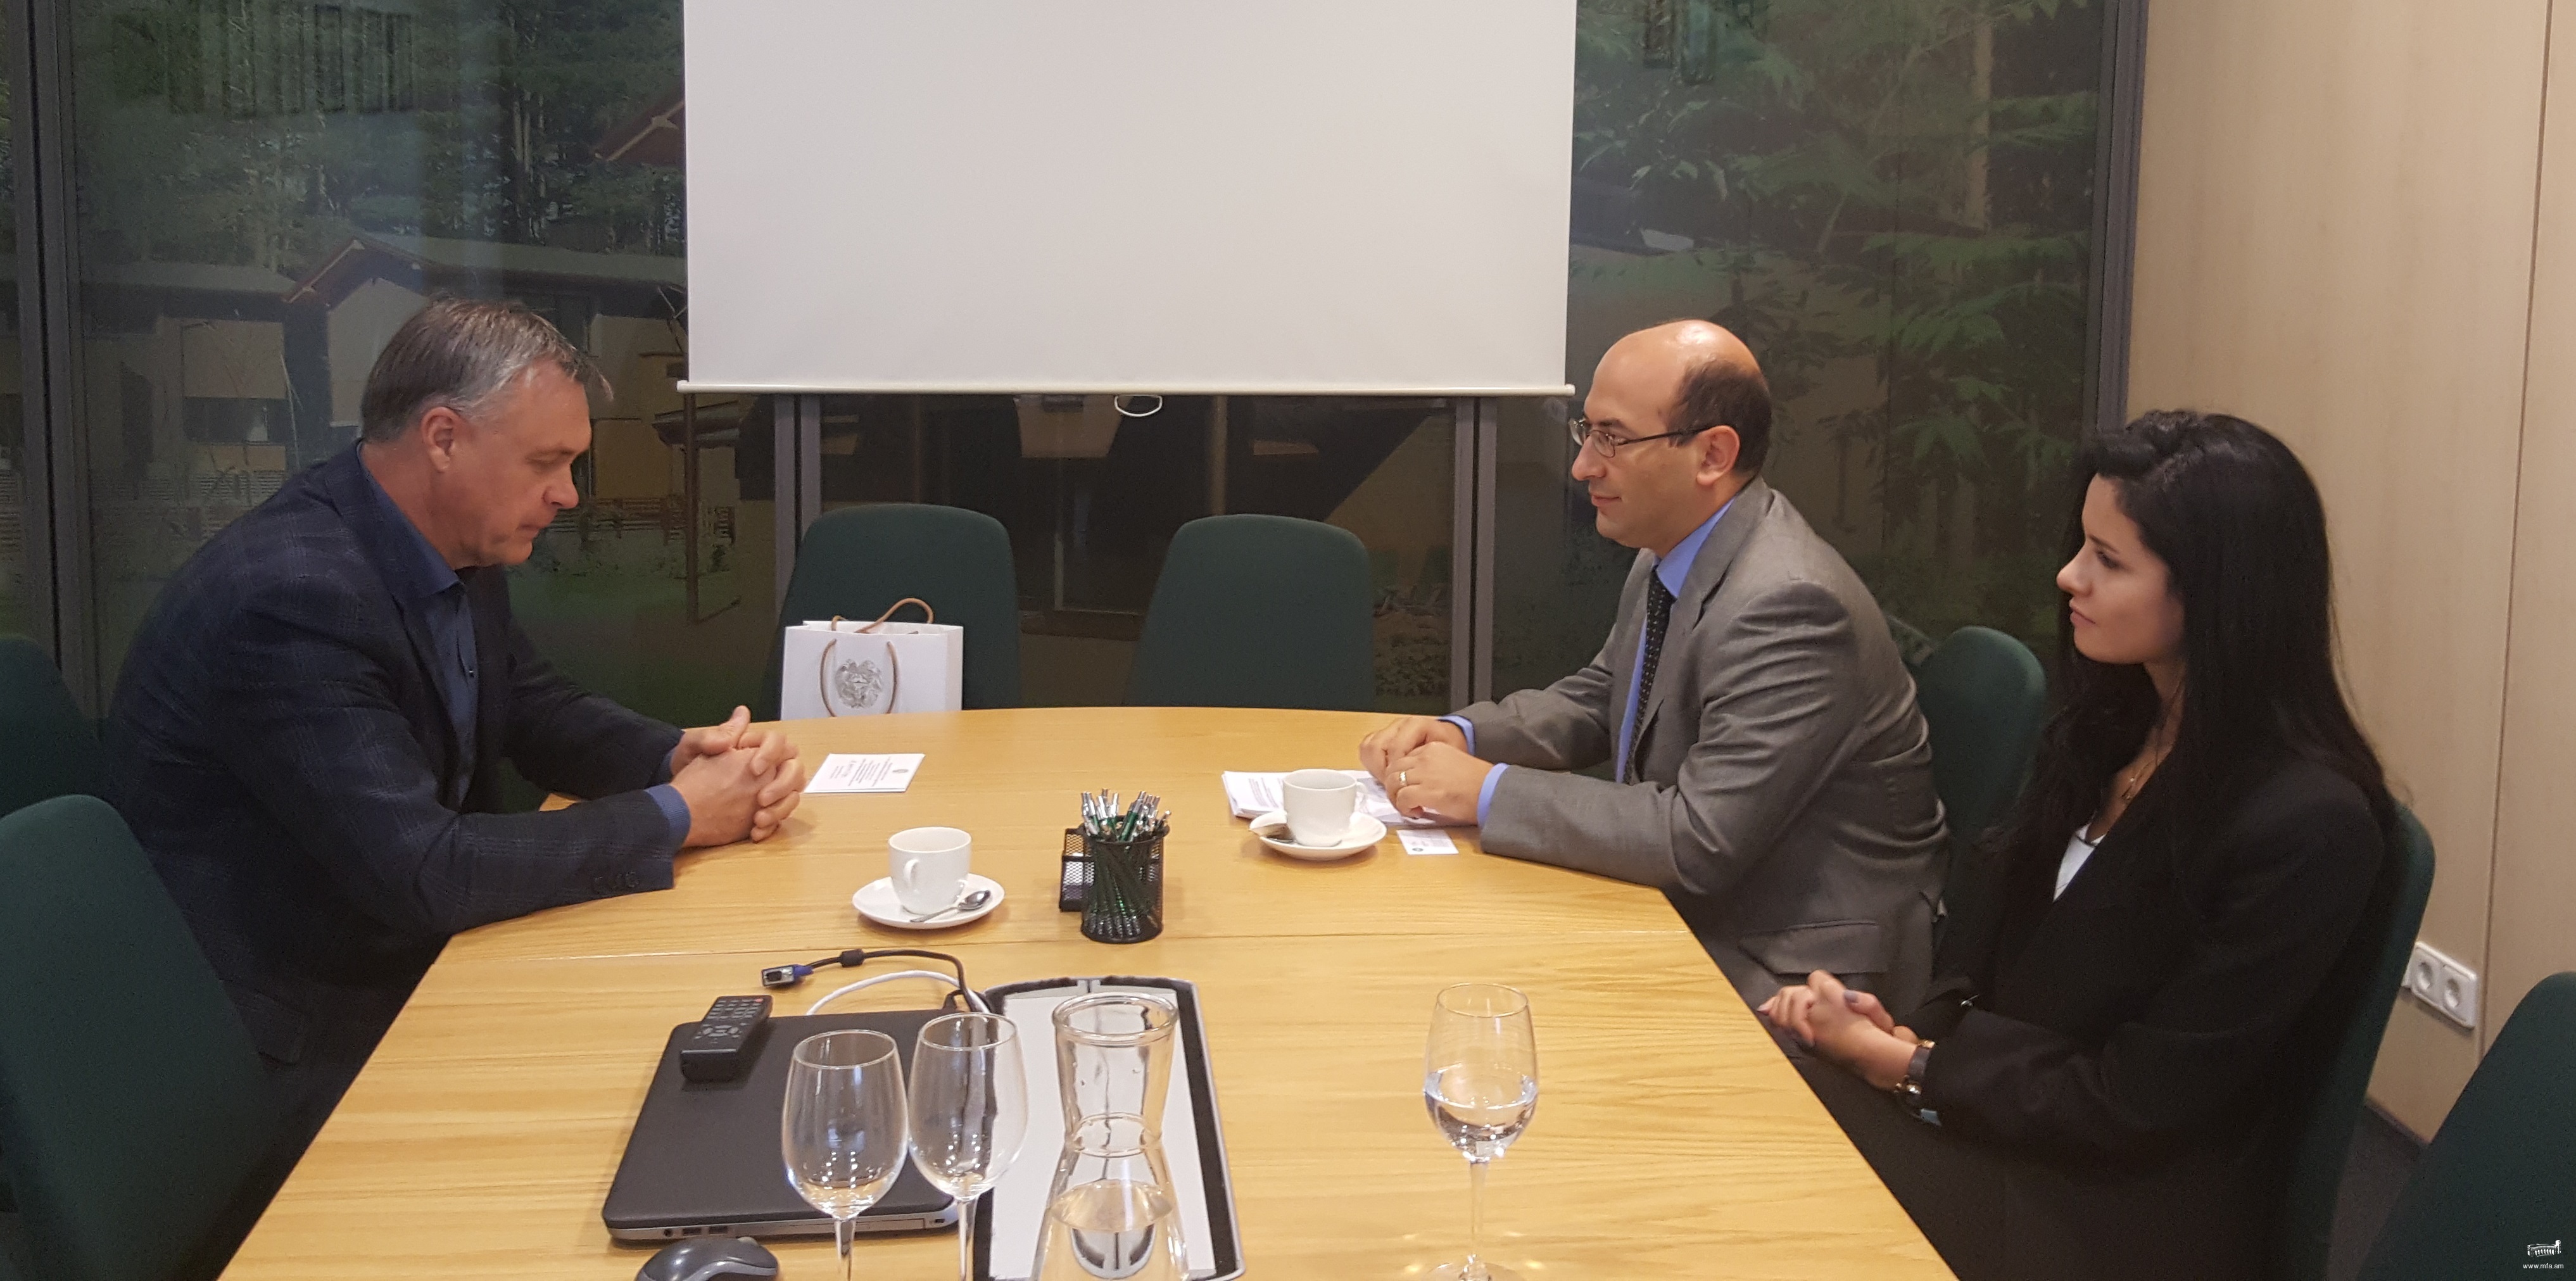 Դեսպան Մկրտչյանի հանդիպումը Լիտվայի արդյունաբերողների կոնֆեդերացիայի նախագահի հետ